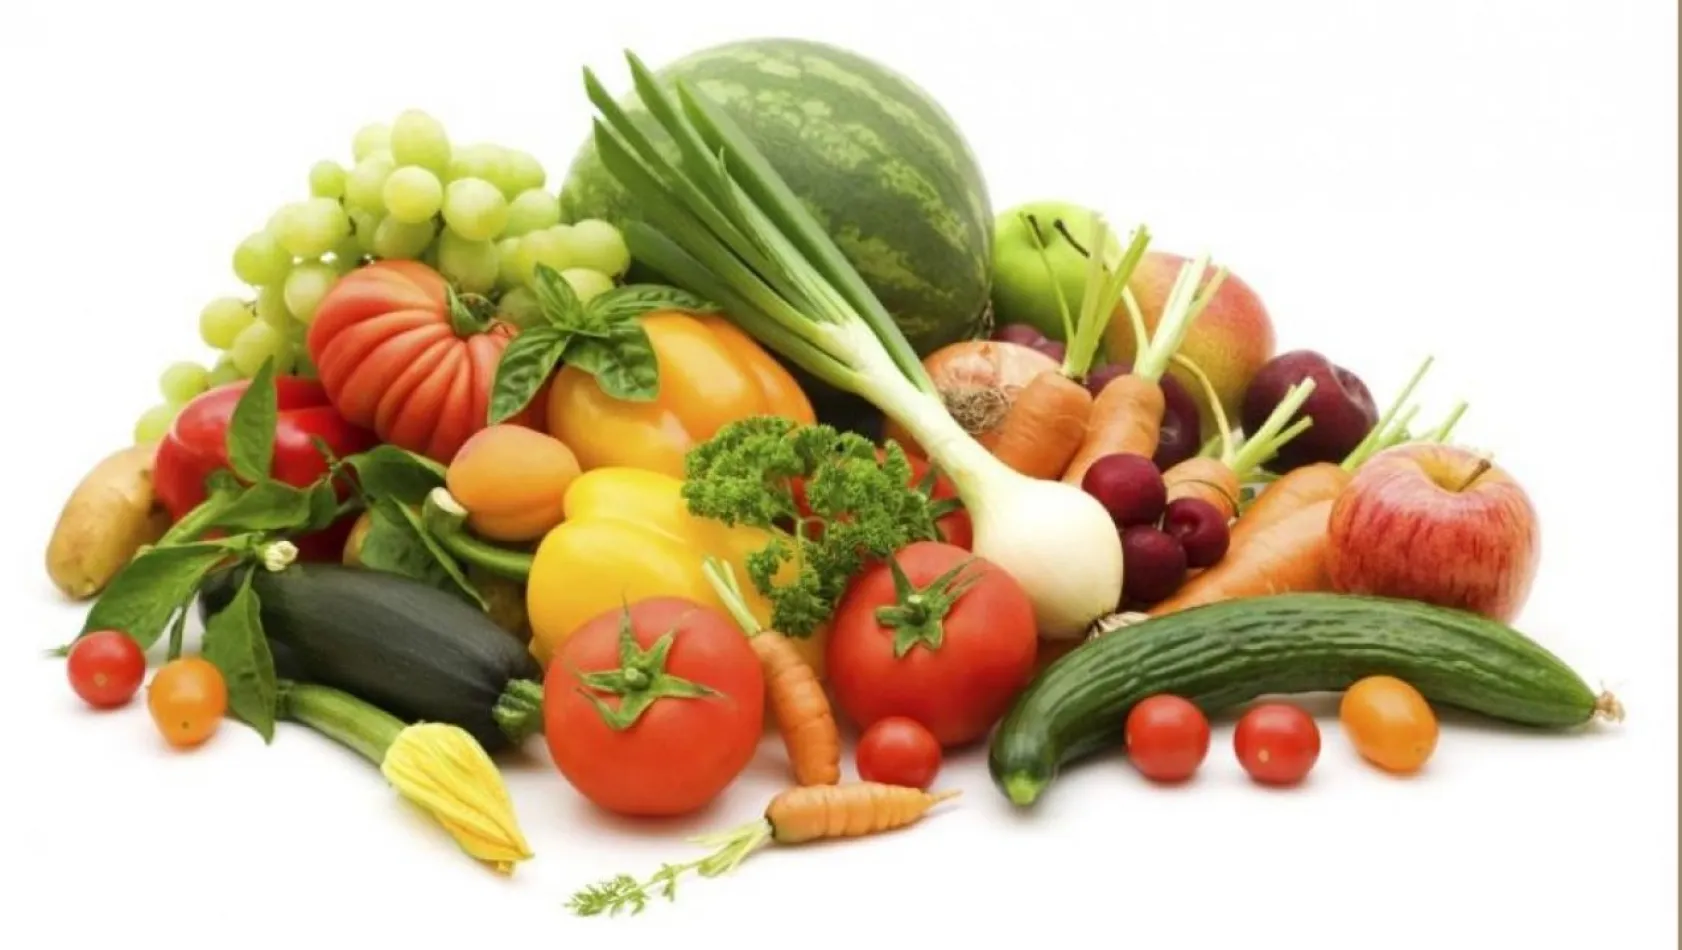 Zamansız sebze ve meyve tüketimine dikkat